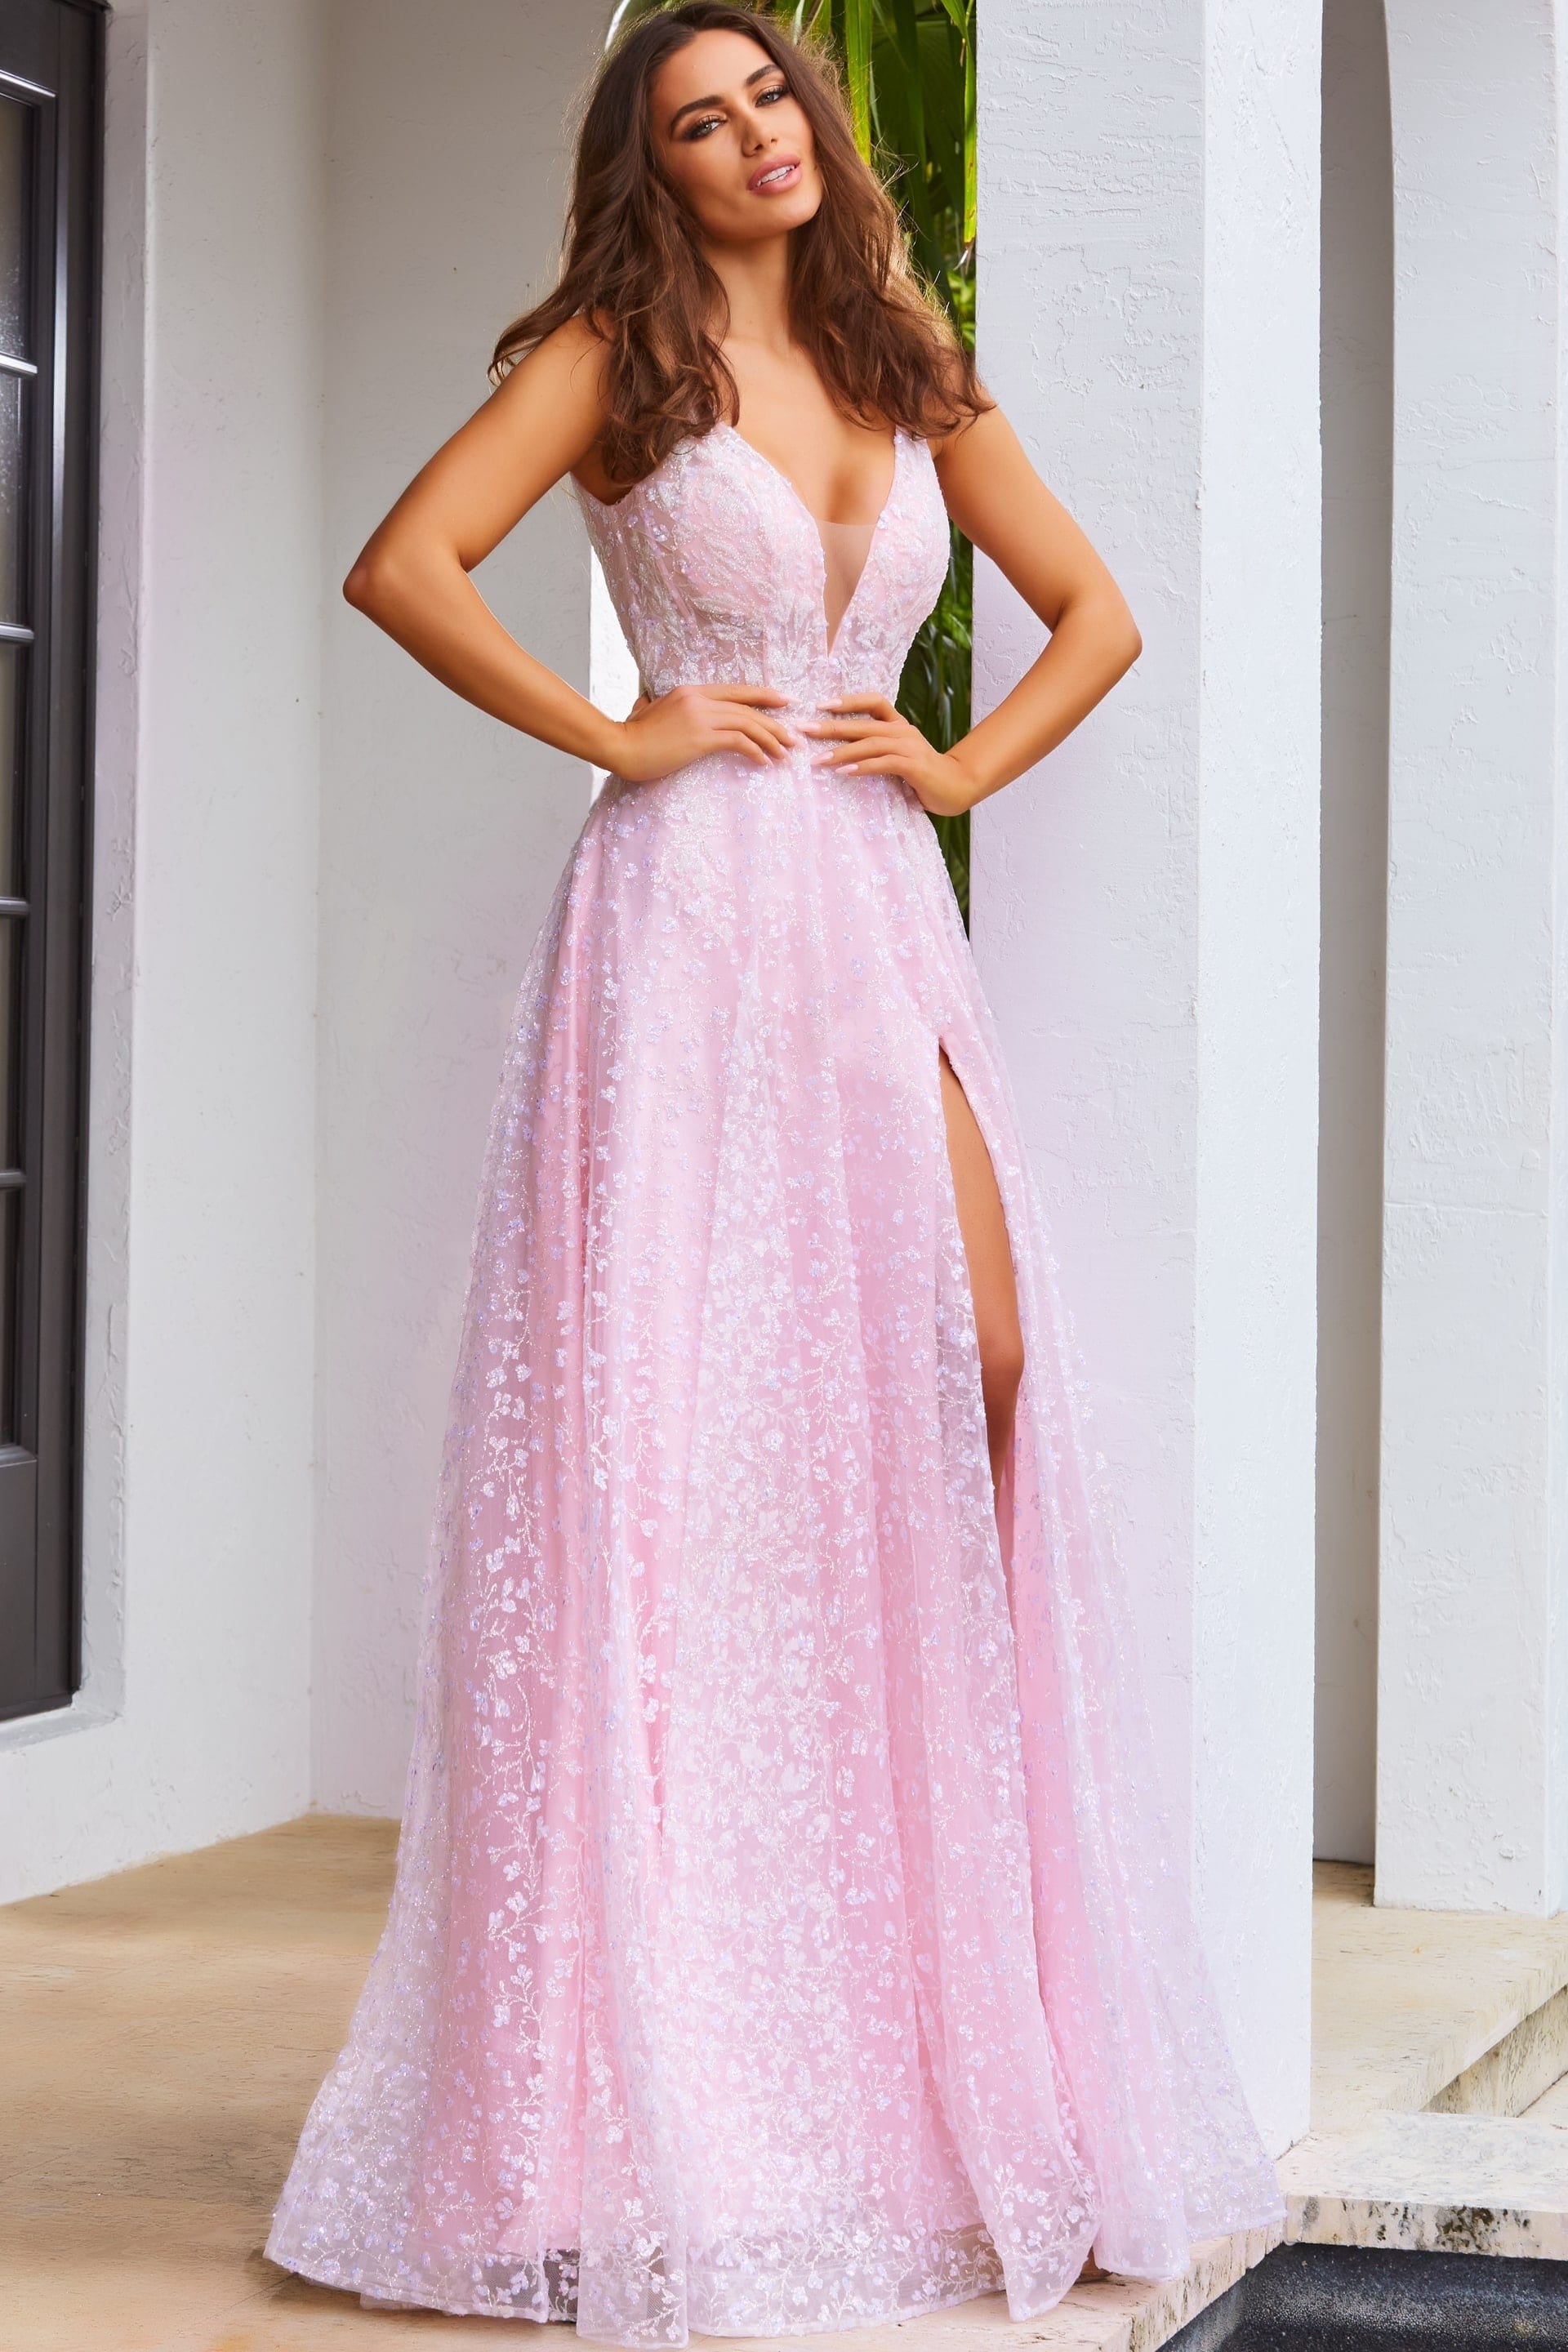 JVN08421-light-pink-prom-dress-A-line-floral-lace-plunging-v-neckline-court-train-high-slit-front-1